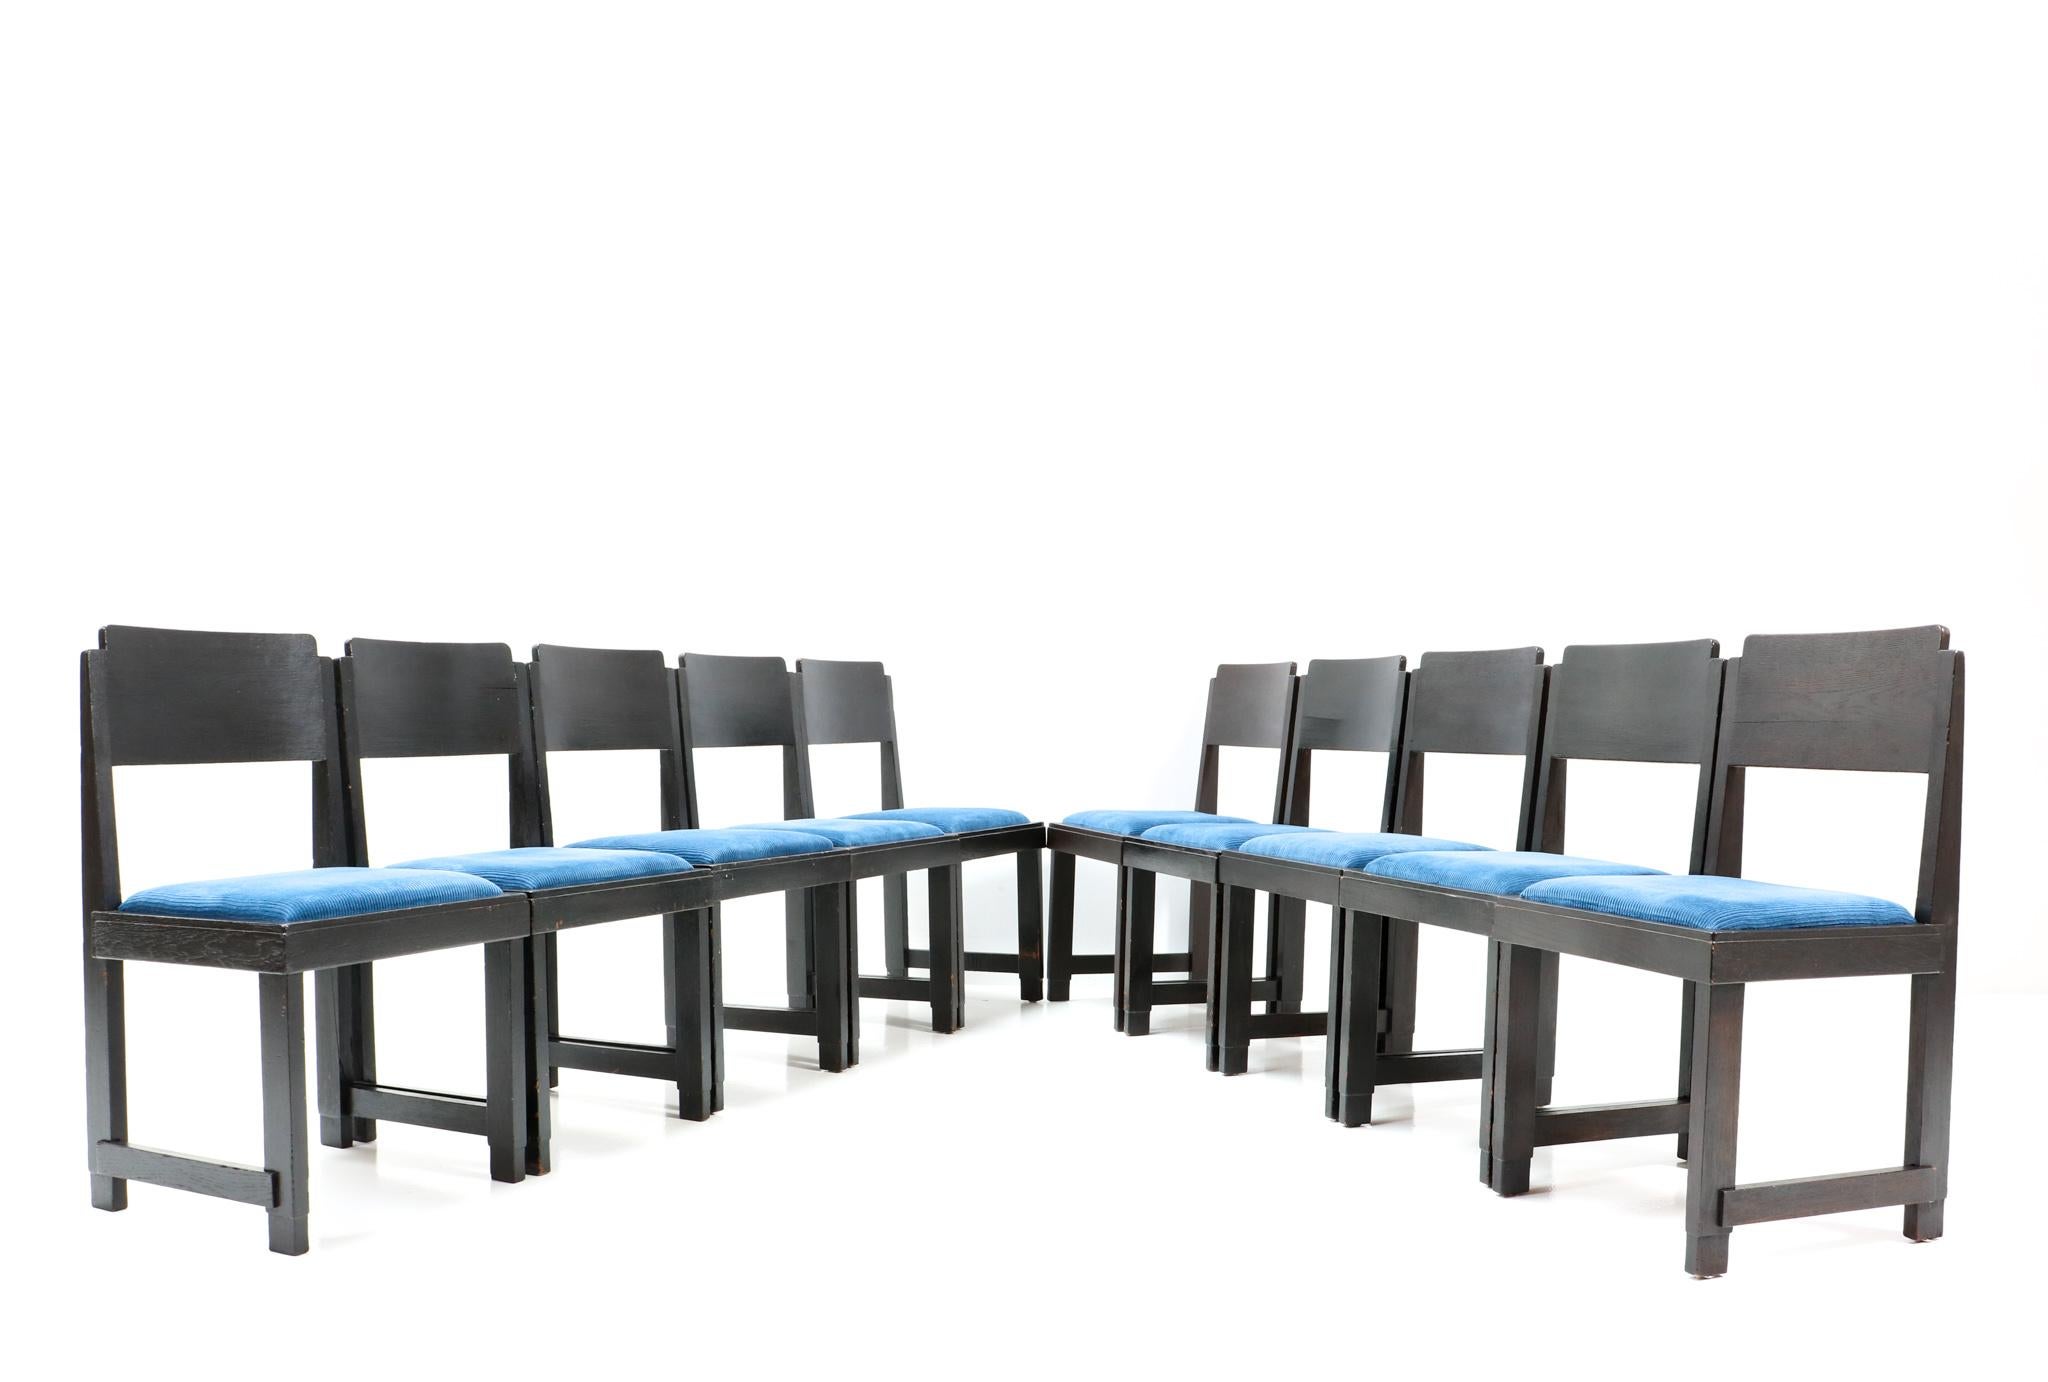 Prächtiger und seltener Satz von zehn modernistischen Art-Déco-Esszimmerstühlen.
Frits Spanjaard zugeschrieben.
Auffälliges niederländisches Design aus den 1920er Jahren.
Rahmen aus lackierter Eiche und Sitze sind mit blauem Manchester-Korduroy